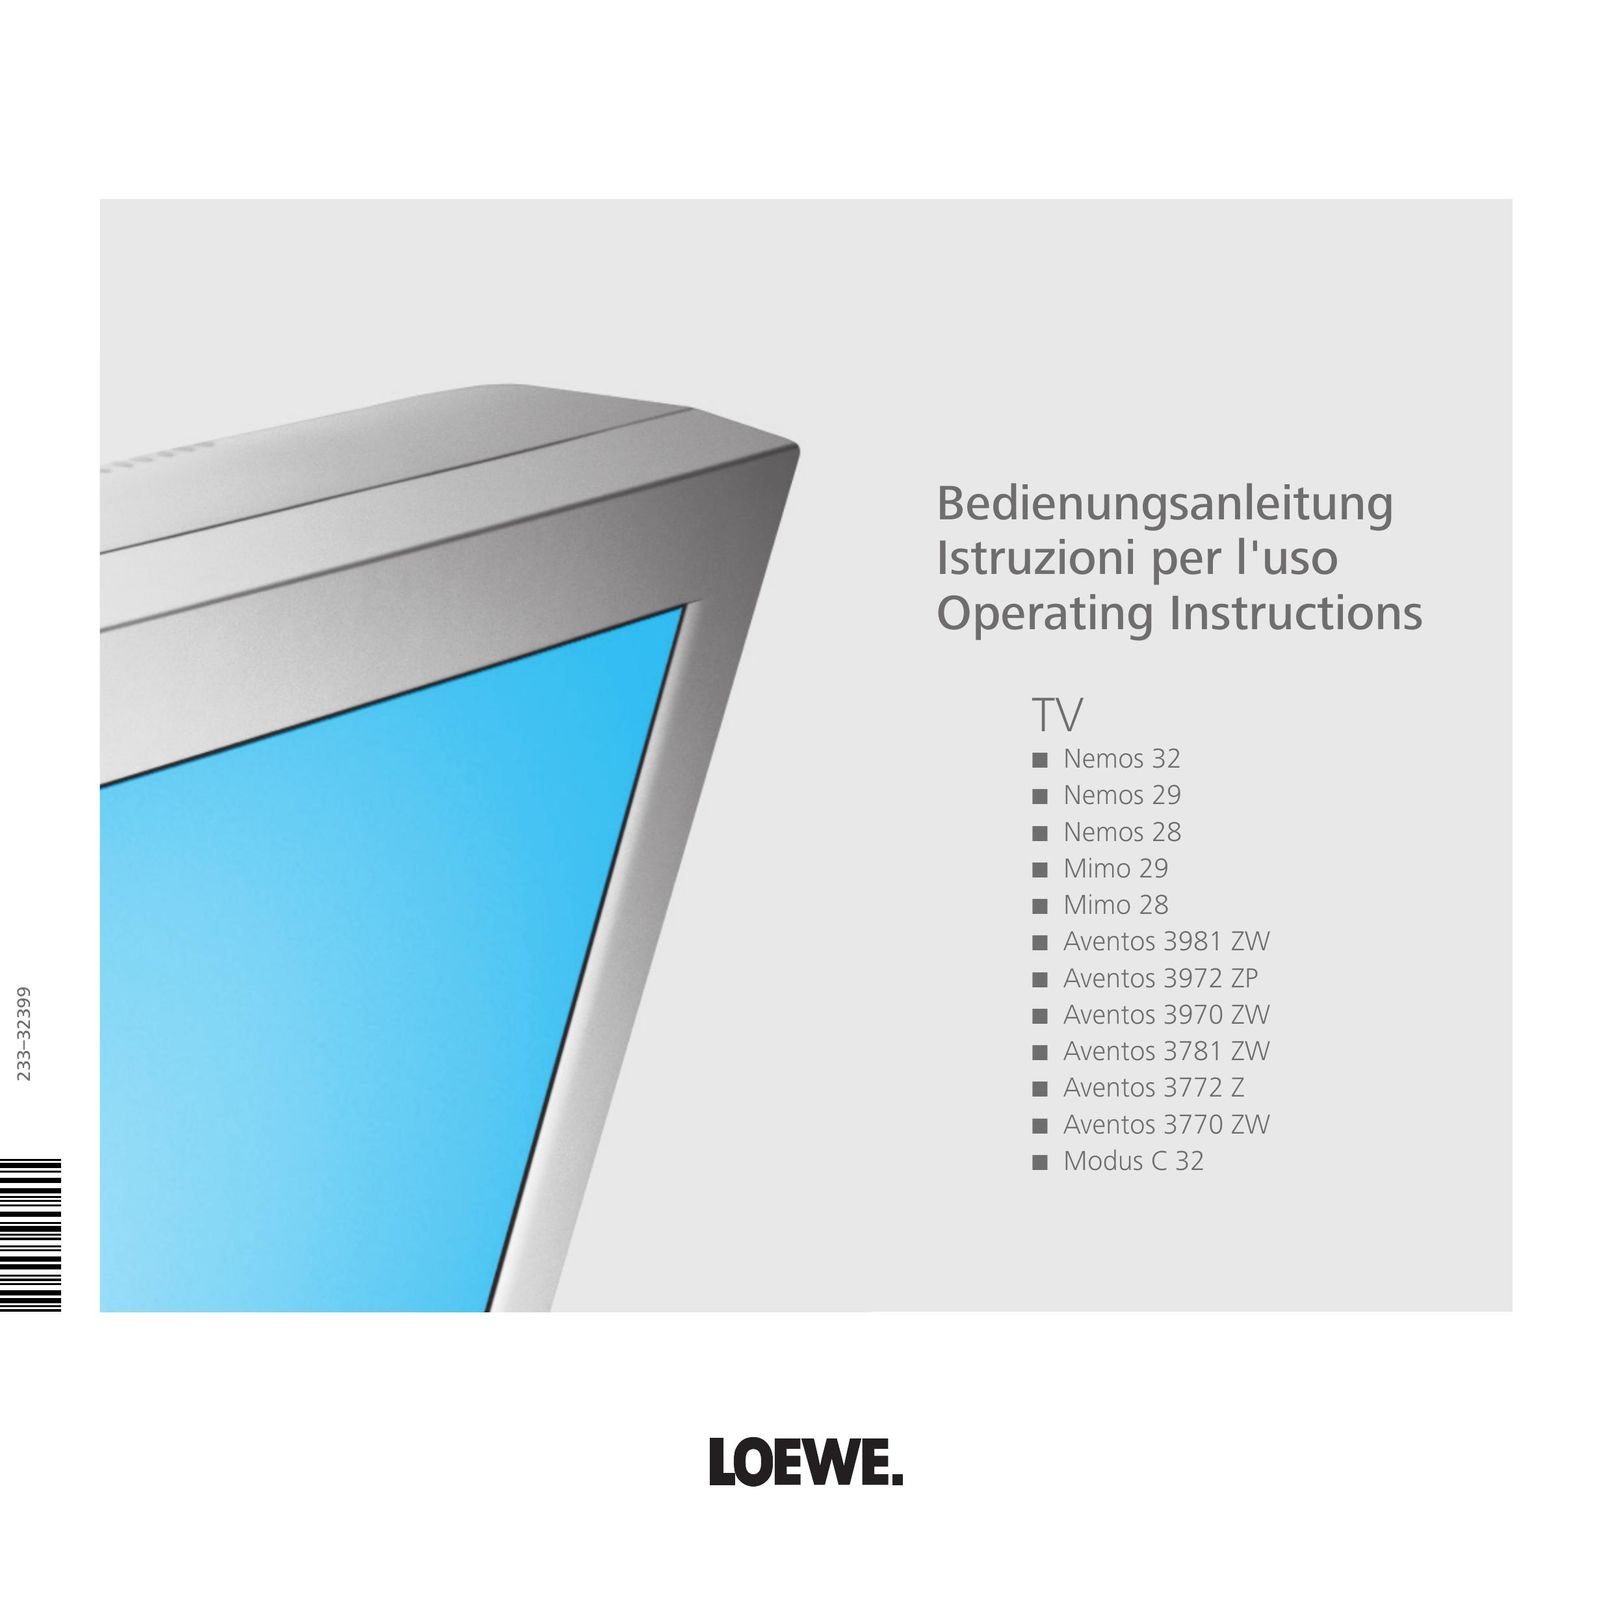 Loewe Aventos 3770 ZW Flat Panel Television User Manual